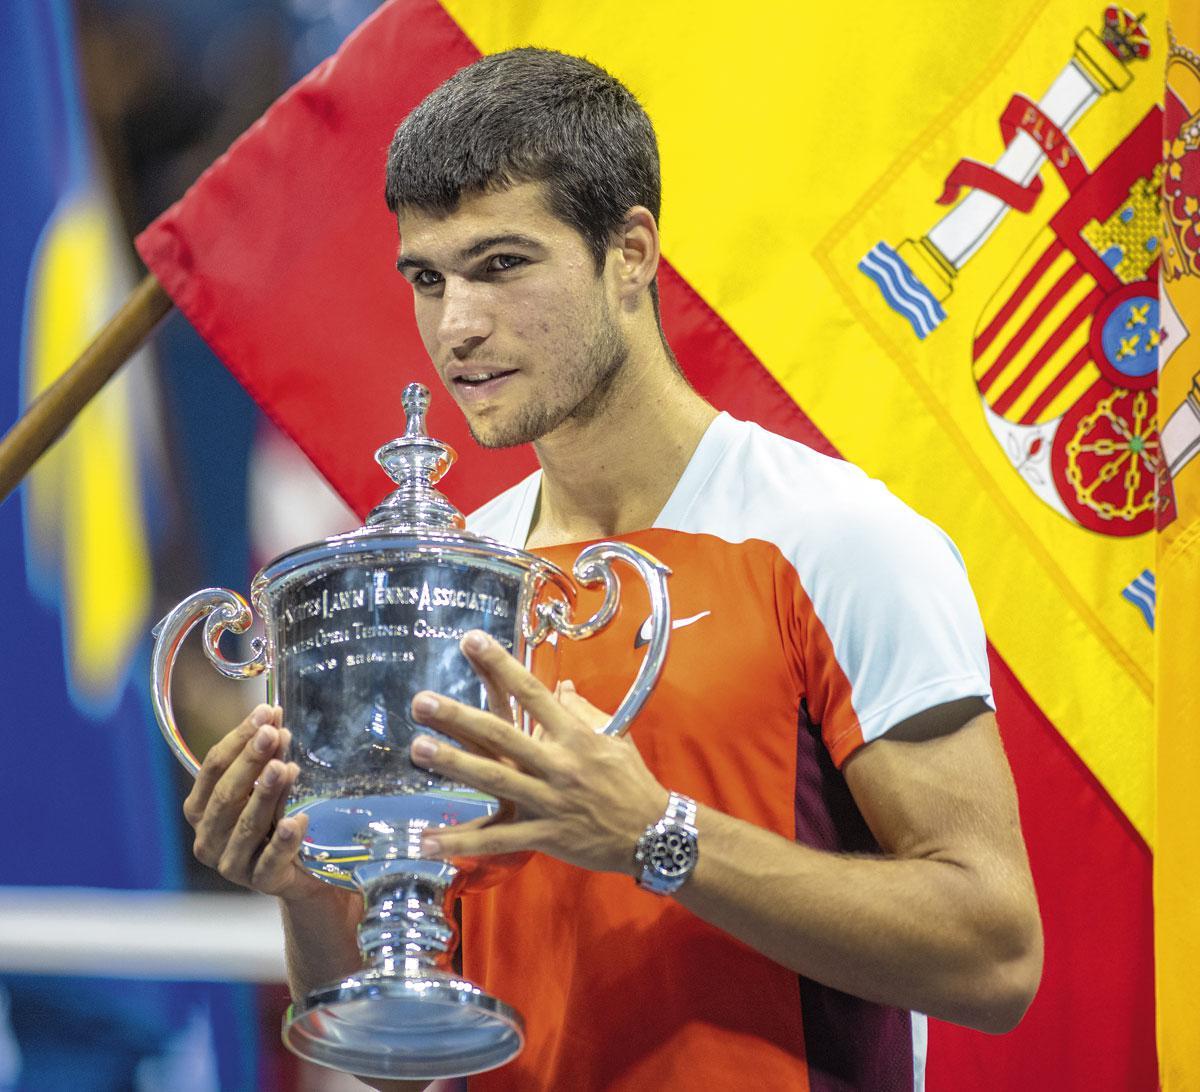 Carlos Alcaraz met de trofee van de US Open, waarna de Spanjaard ook het nummer één van de wereld werd, als jongste ooit.